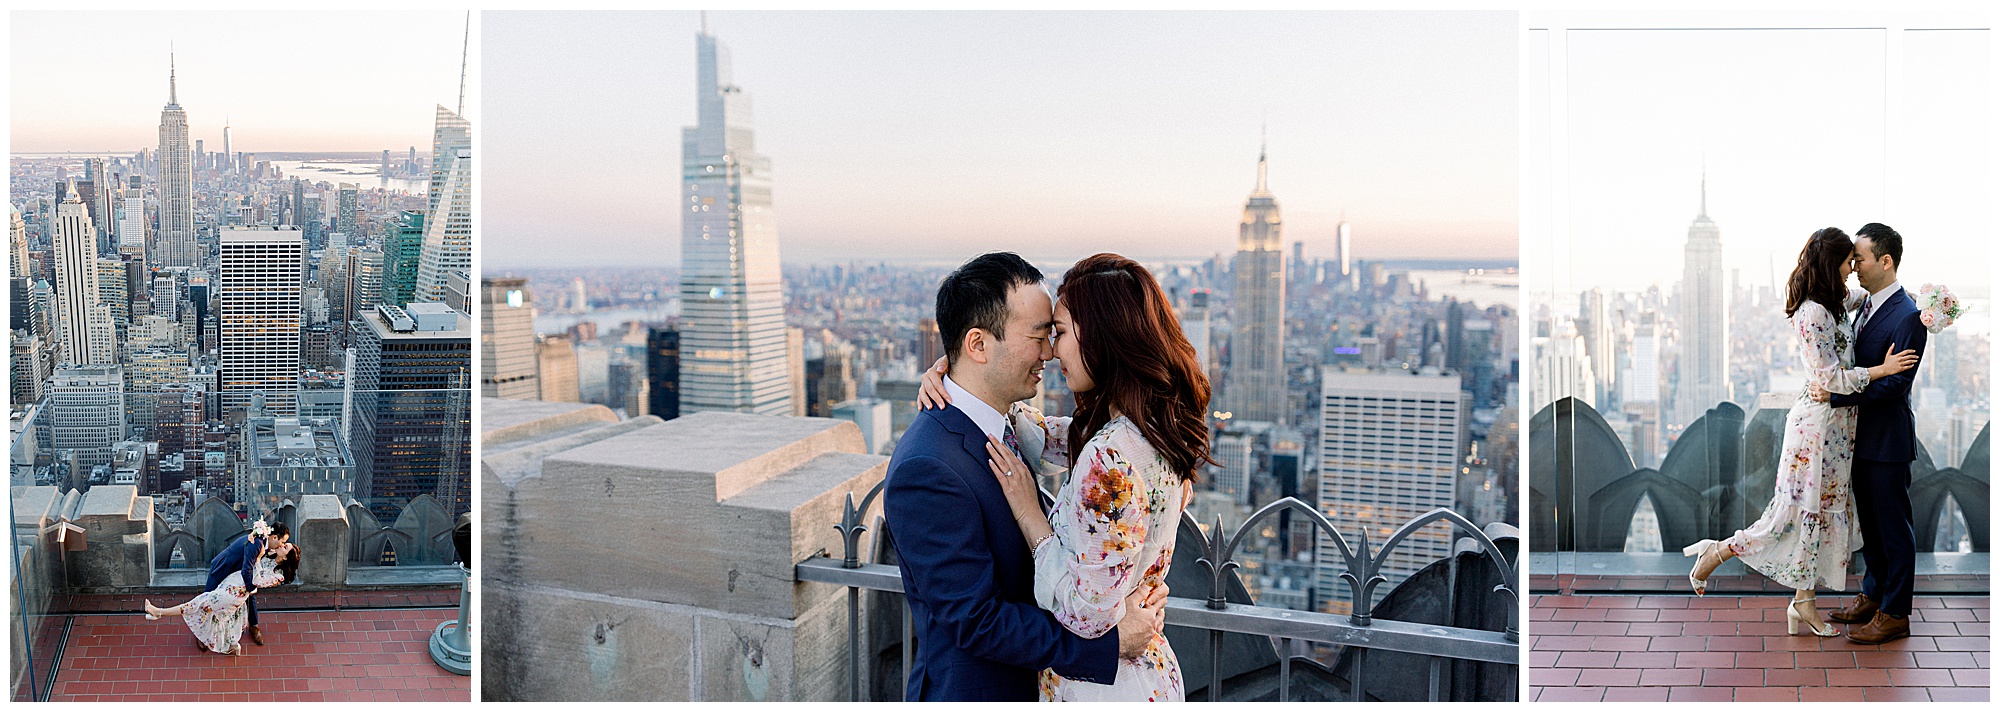 Unique New York wedding photographers